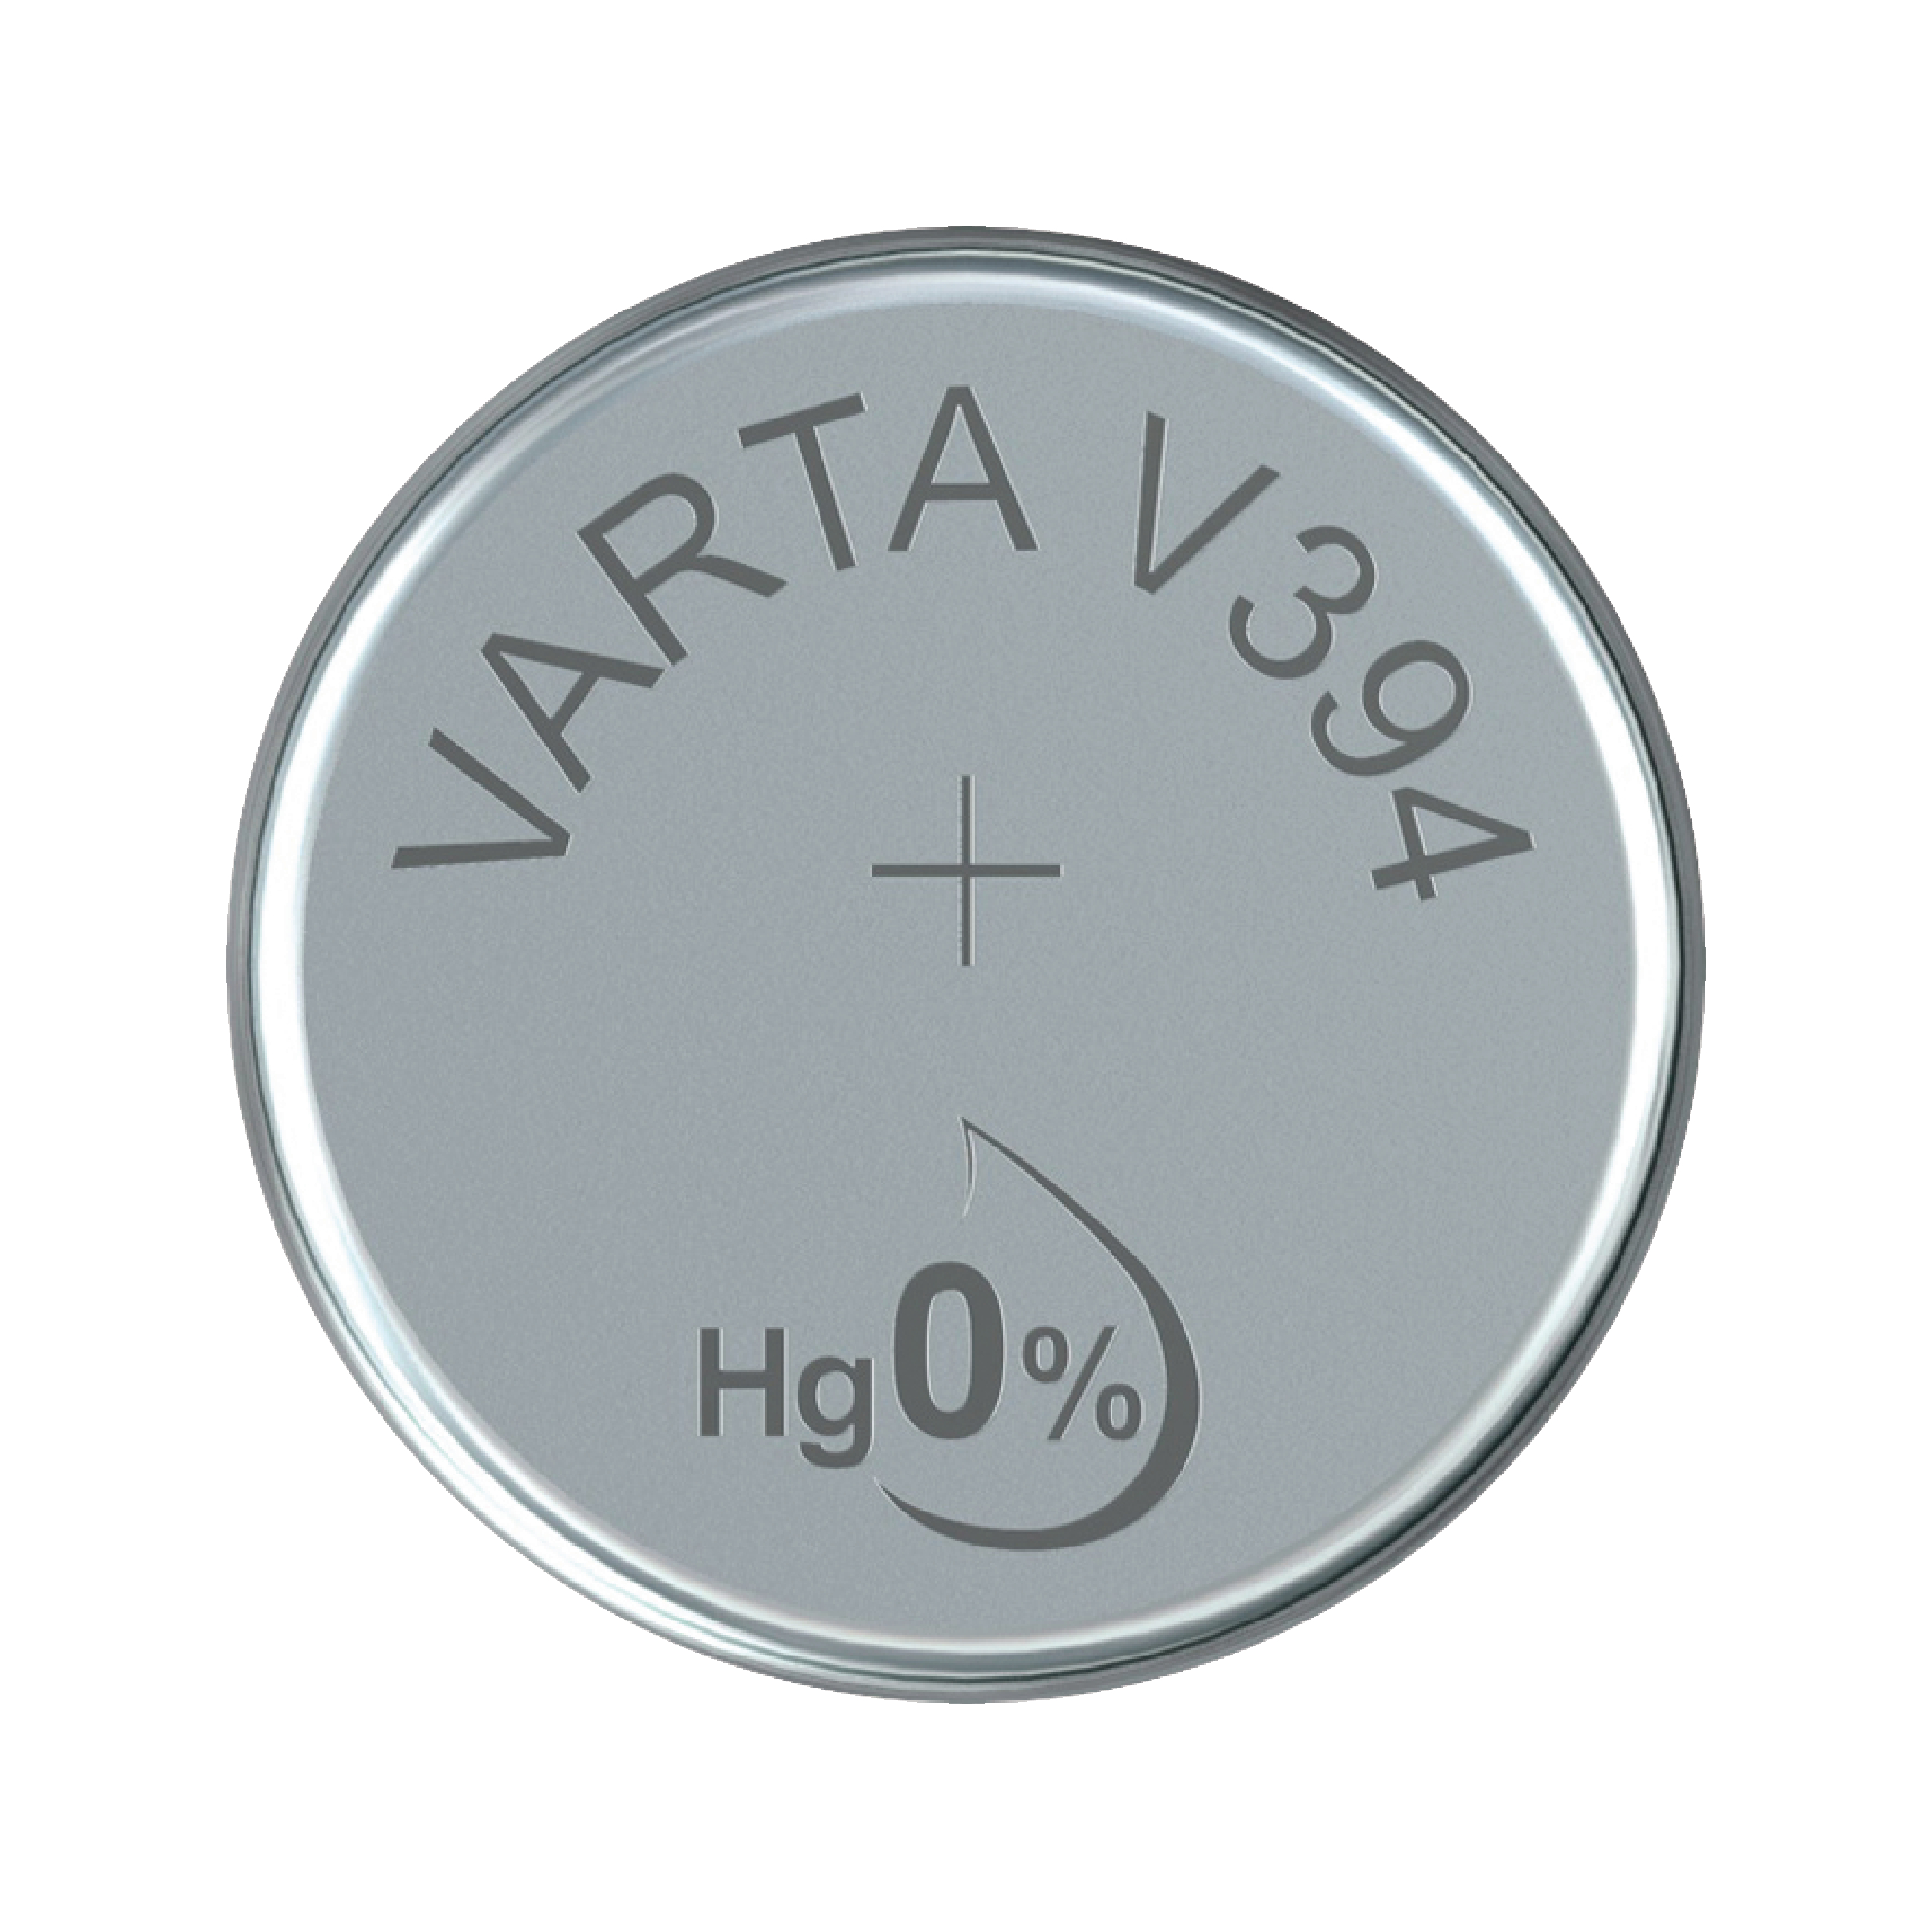 Pile bouton Varta modèle SR43W référence V386 (1,55 V), Piles bouton